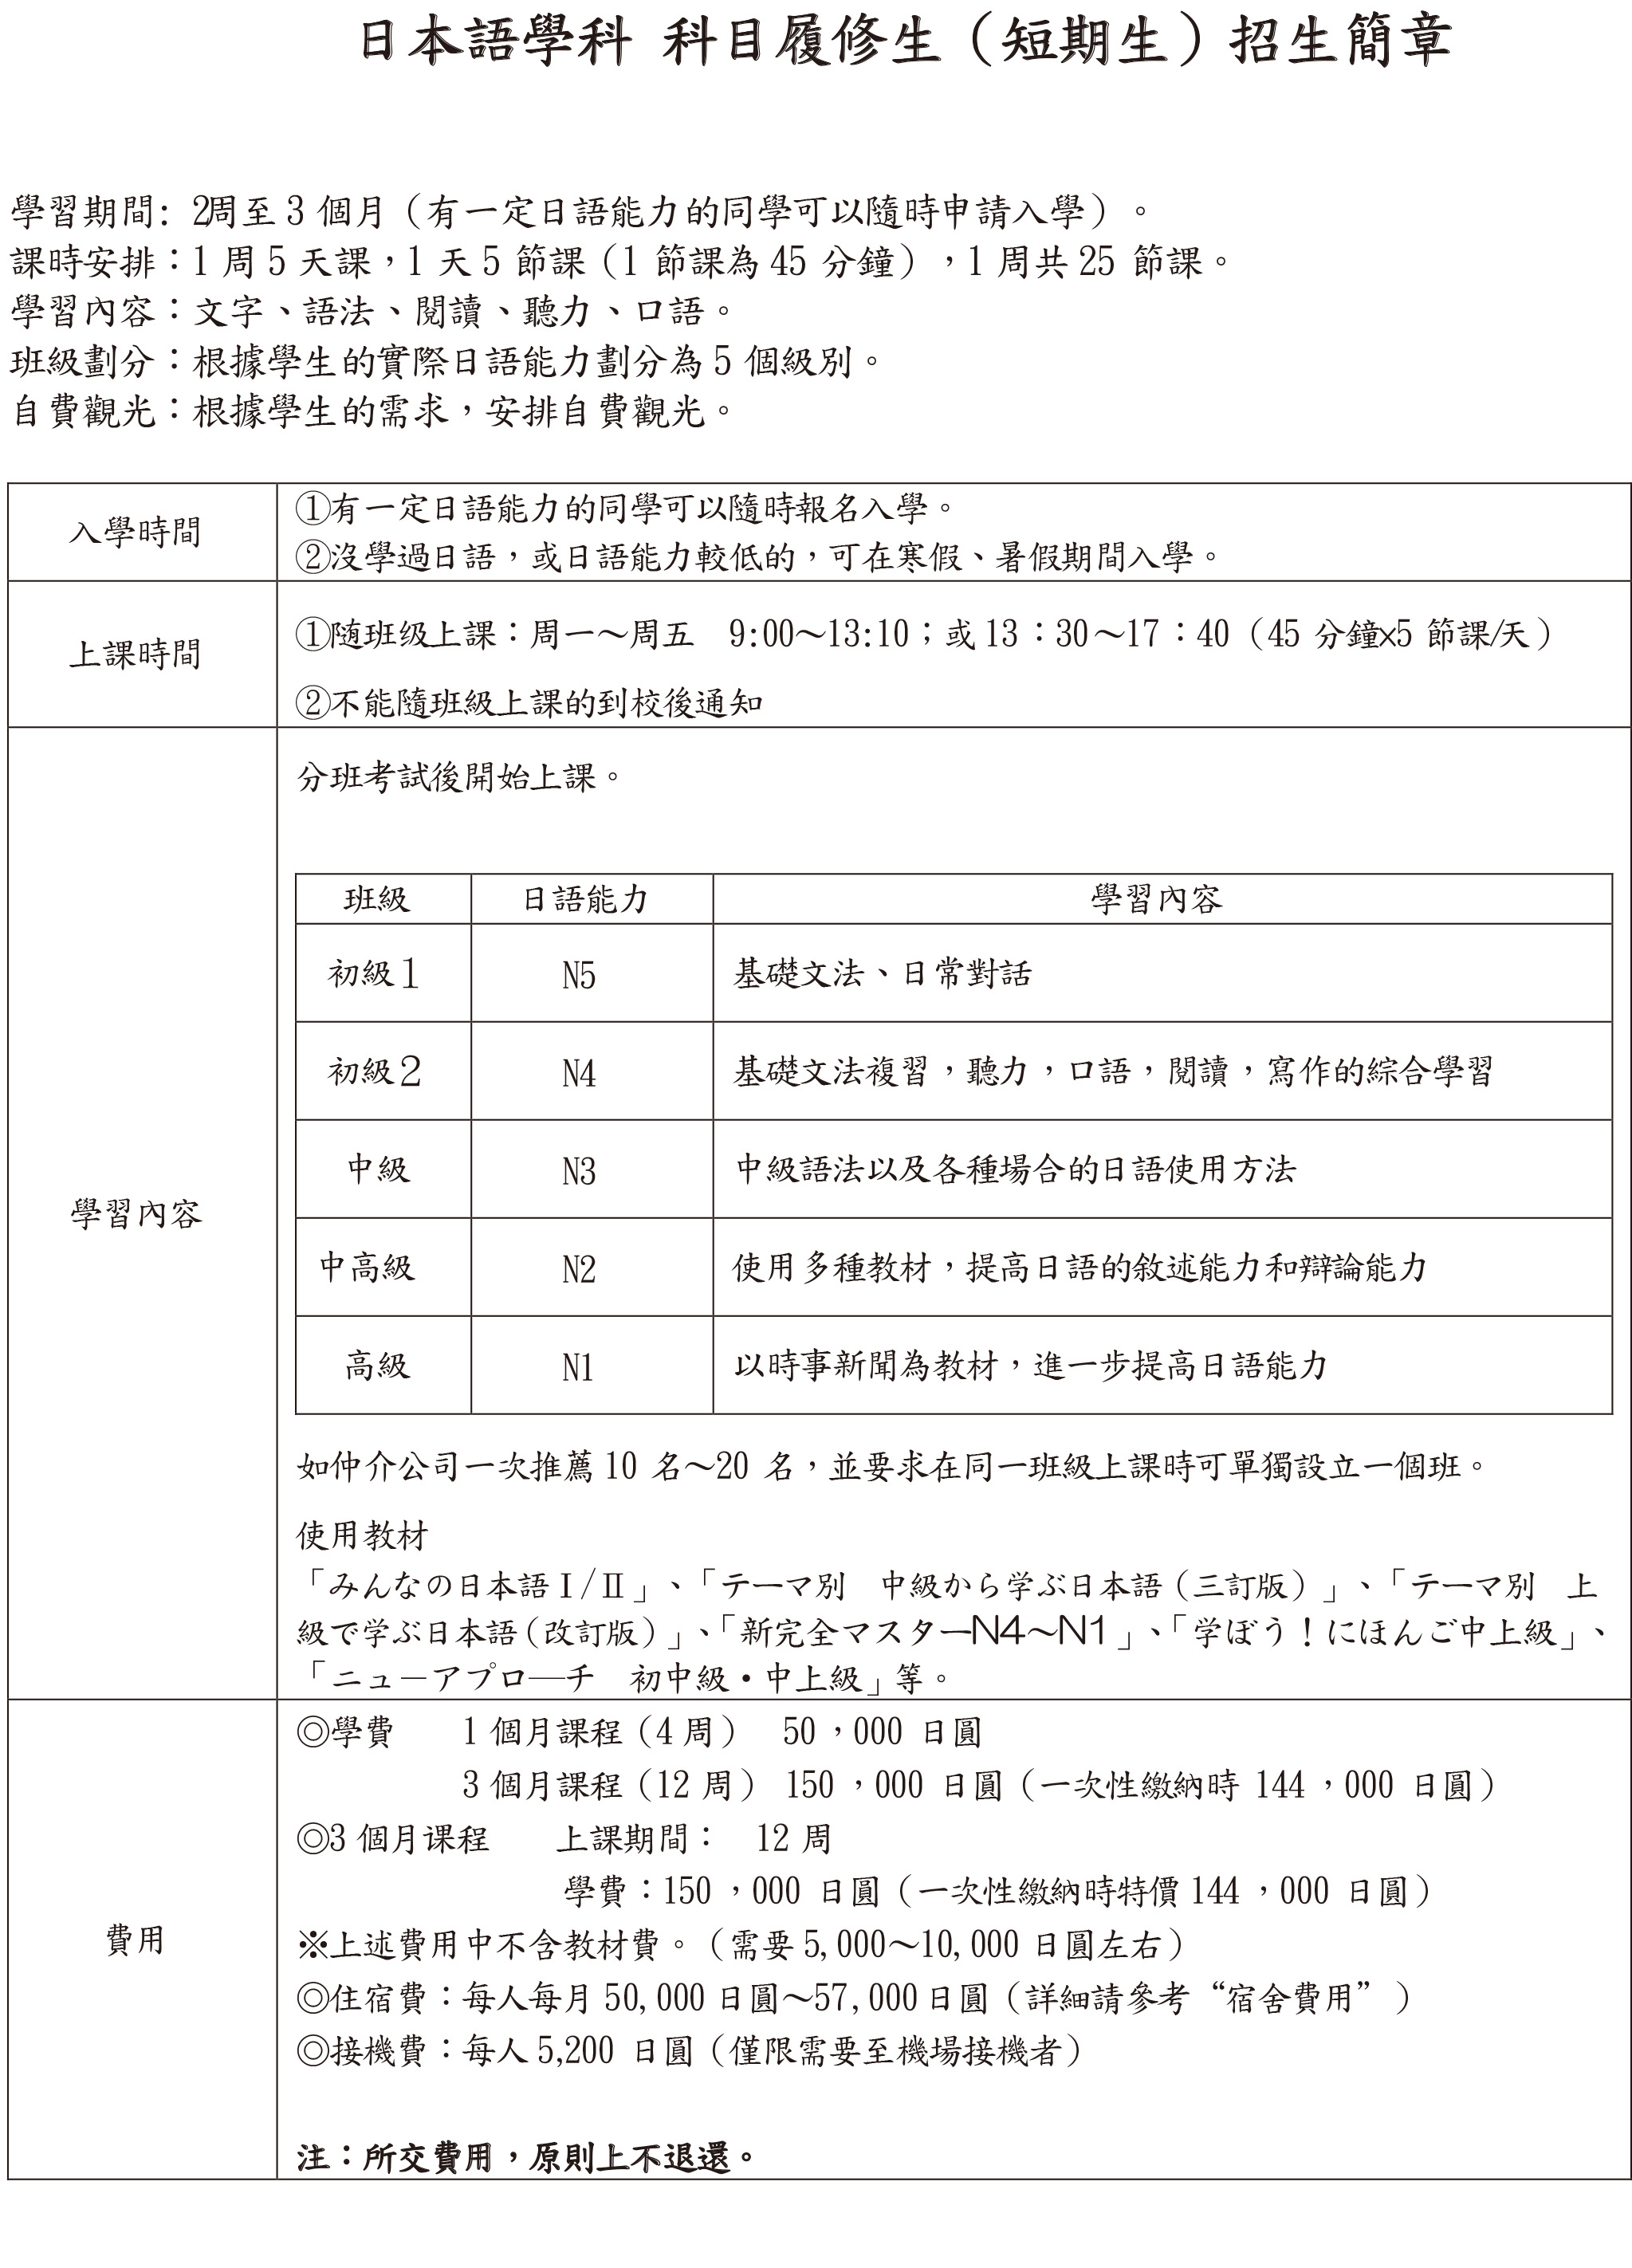 日本留學申請流程及簡章-招生簡章